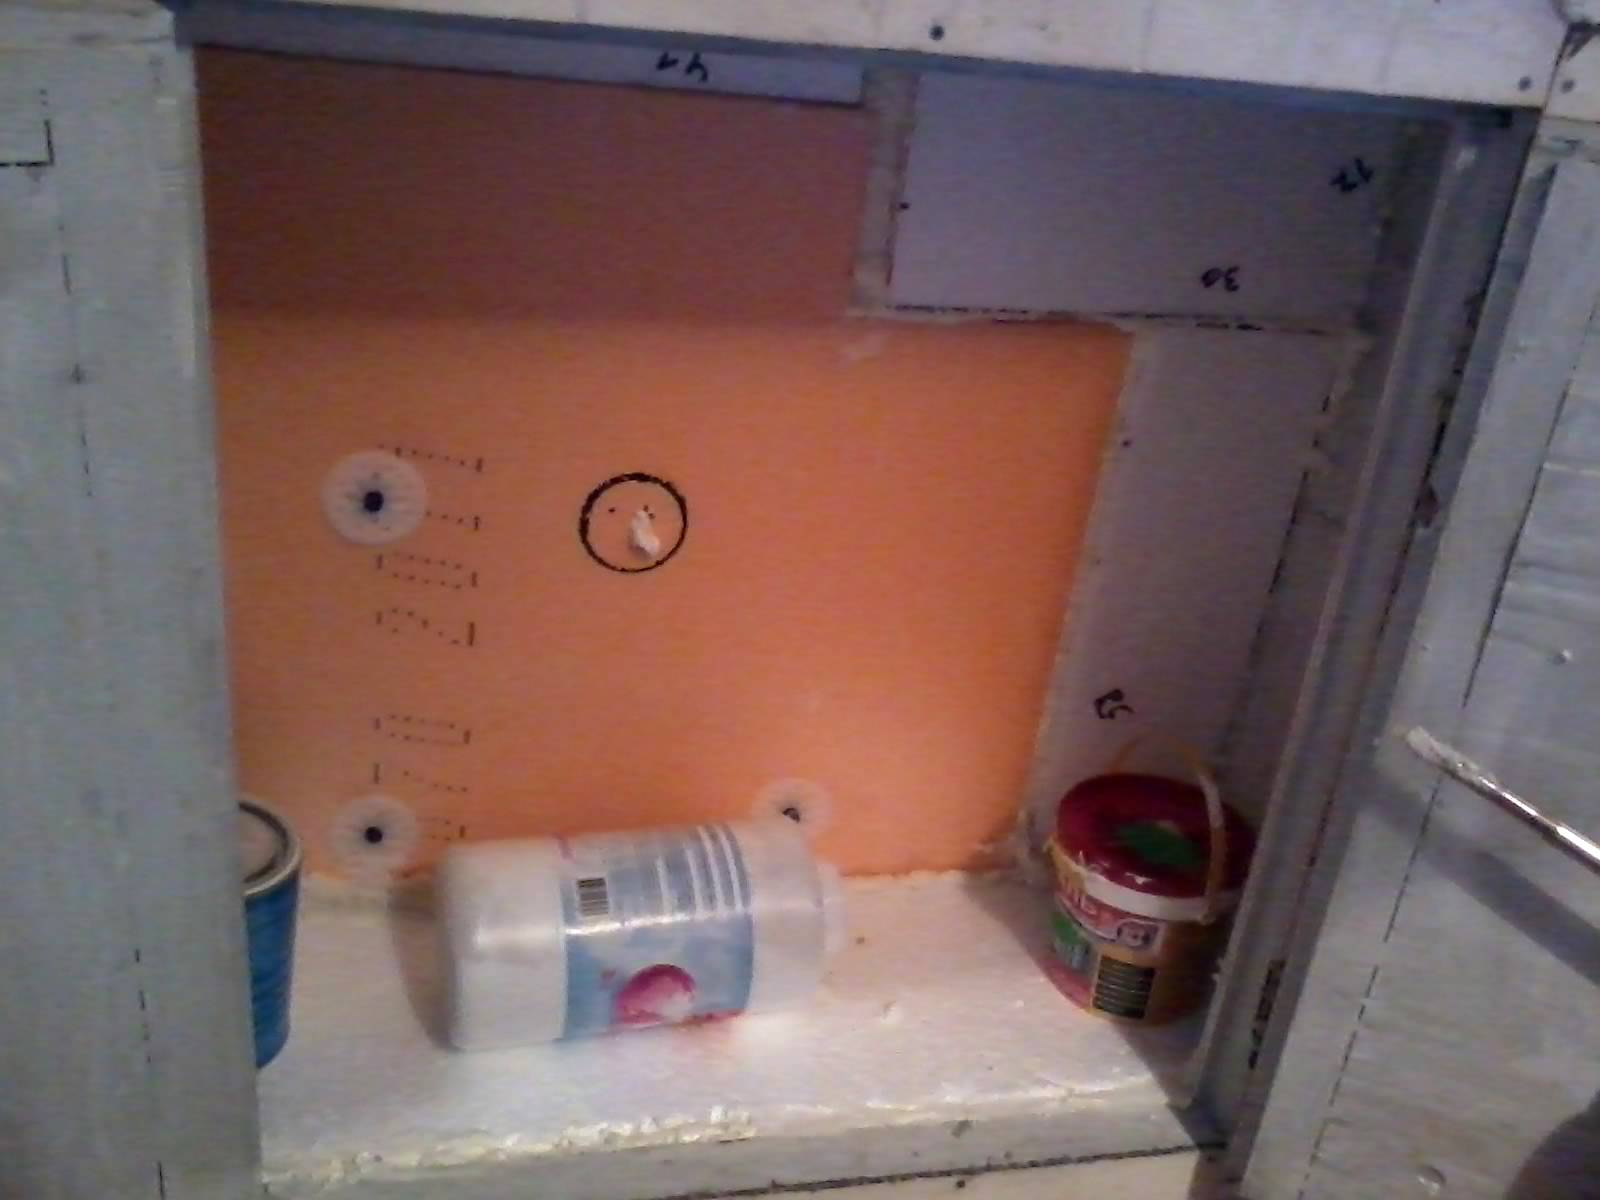 Холодильный шкаф под подоконником в кухне - строительные рецепты мира